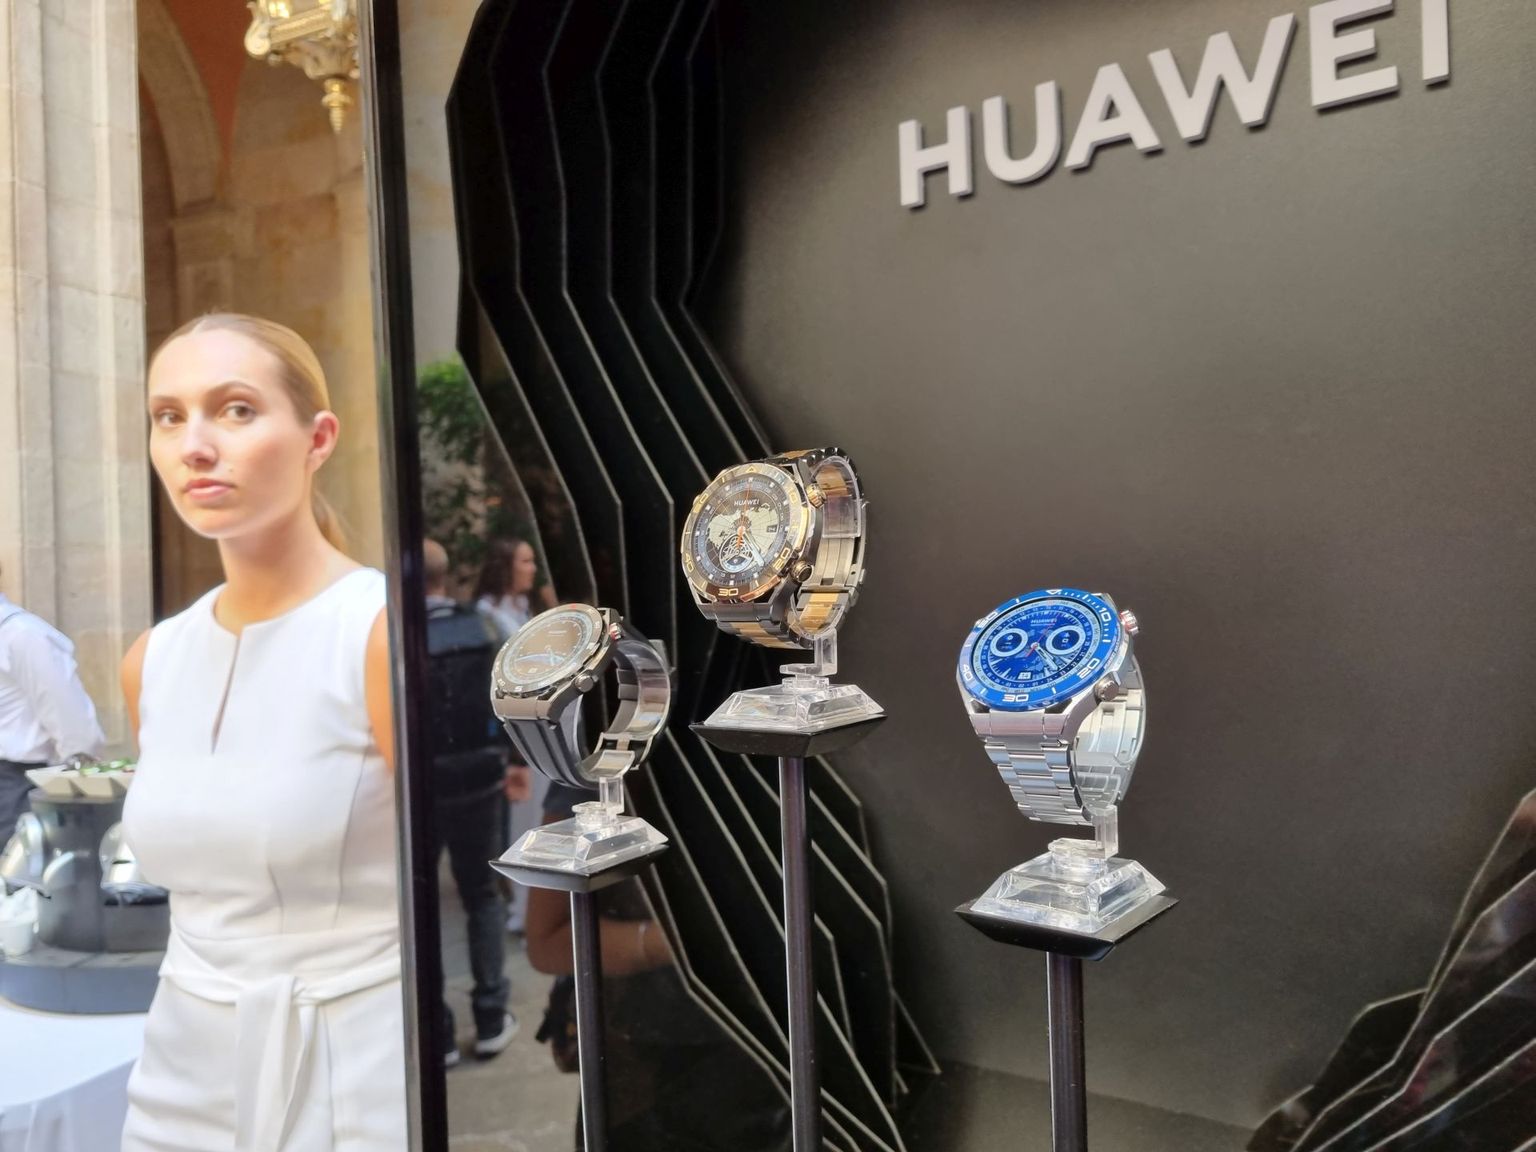 Huawei uued nutikellad tahavad «ära petta»: need ei näe välja nagu nutikellad, vaid vihjavad traditsioonilise kellatööstuse luksuslikule disainile.